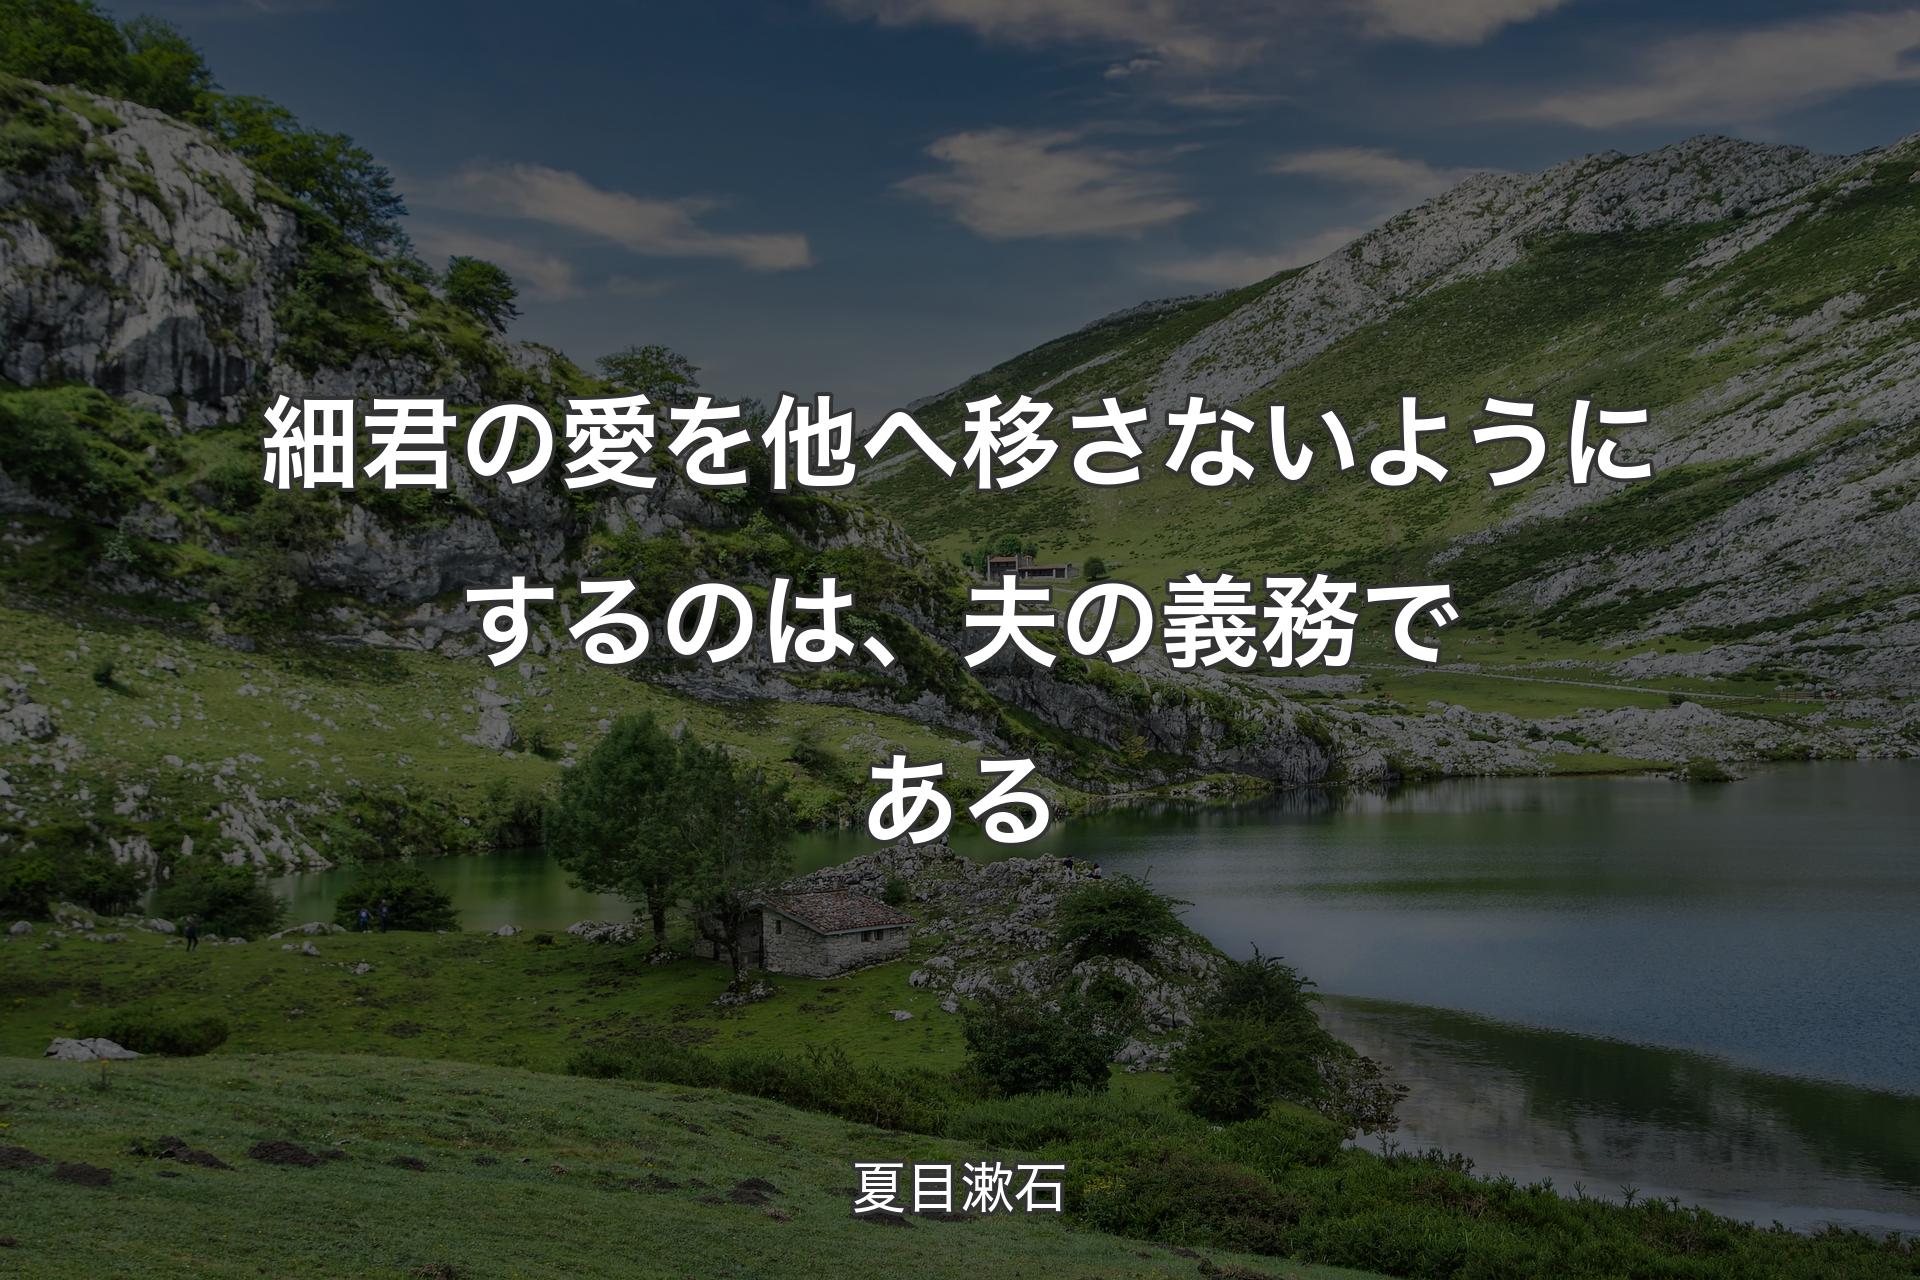 【背景1】細君の愛を他へ移さないようにするのは、夫の義務である - 夏目漱石